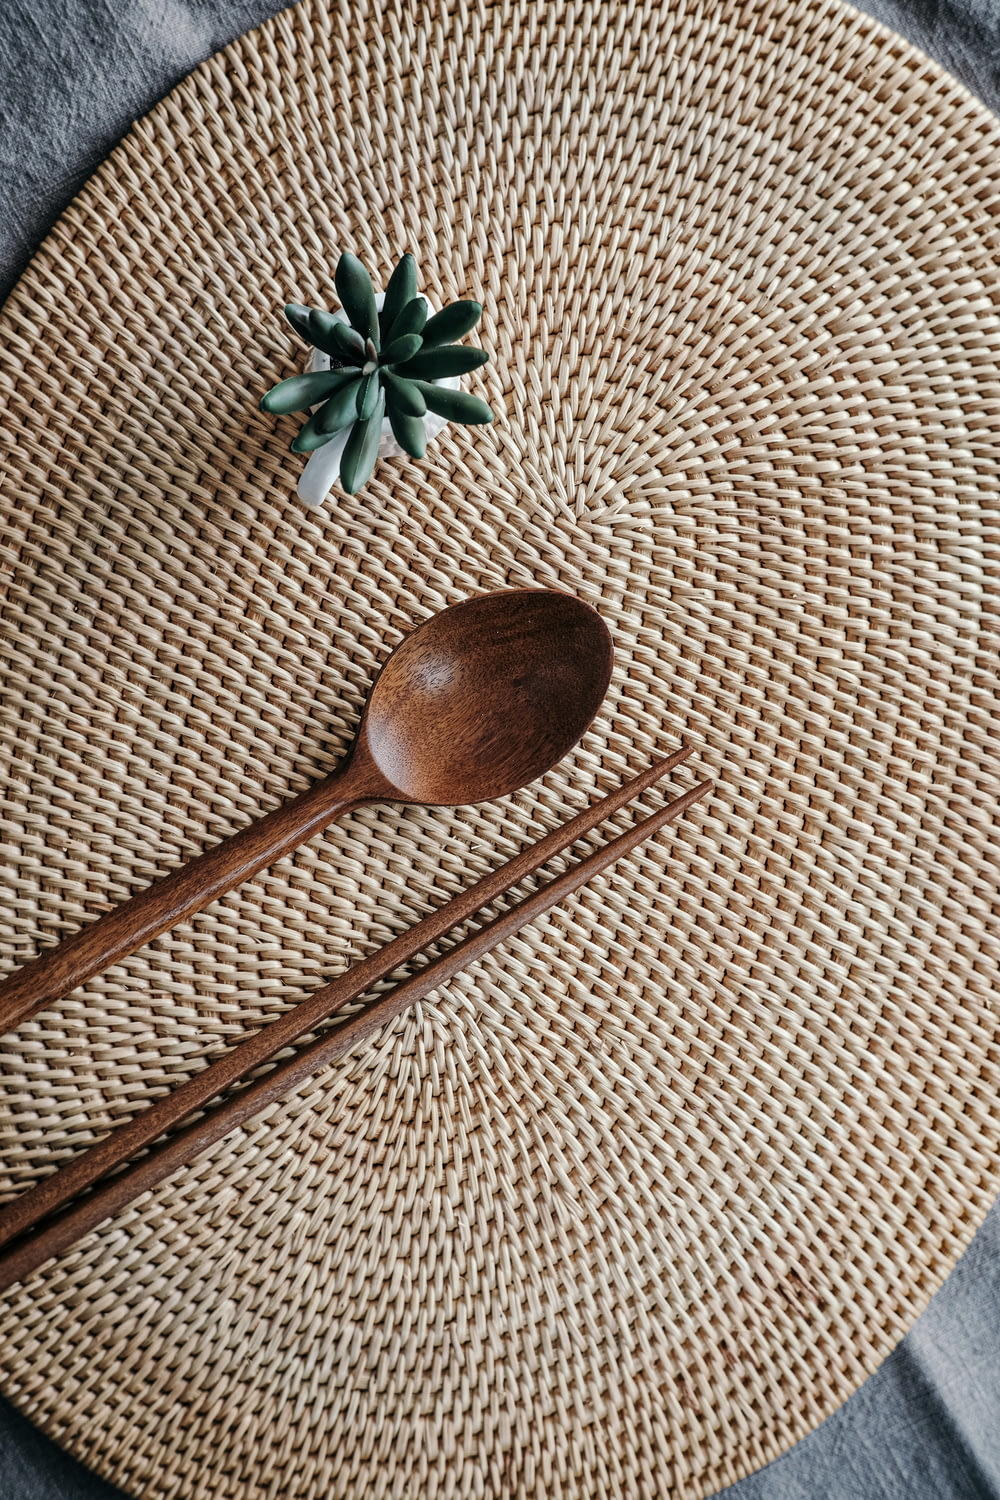 cucchiaio di legno marrone su tessuto marrone e bianco